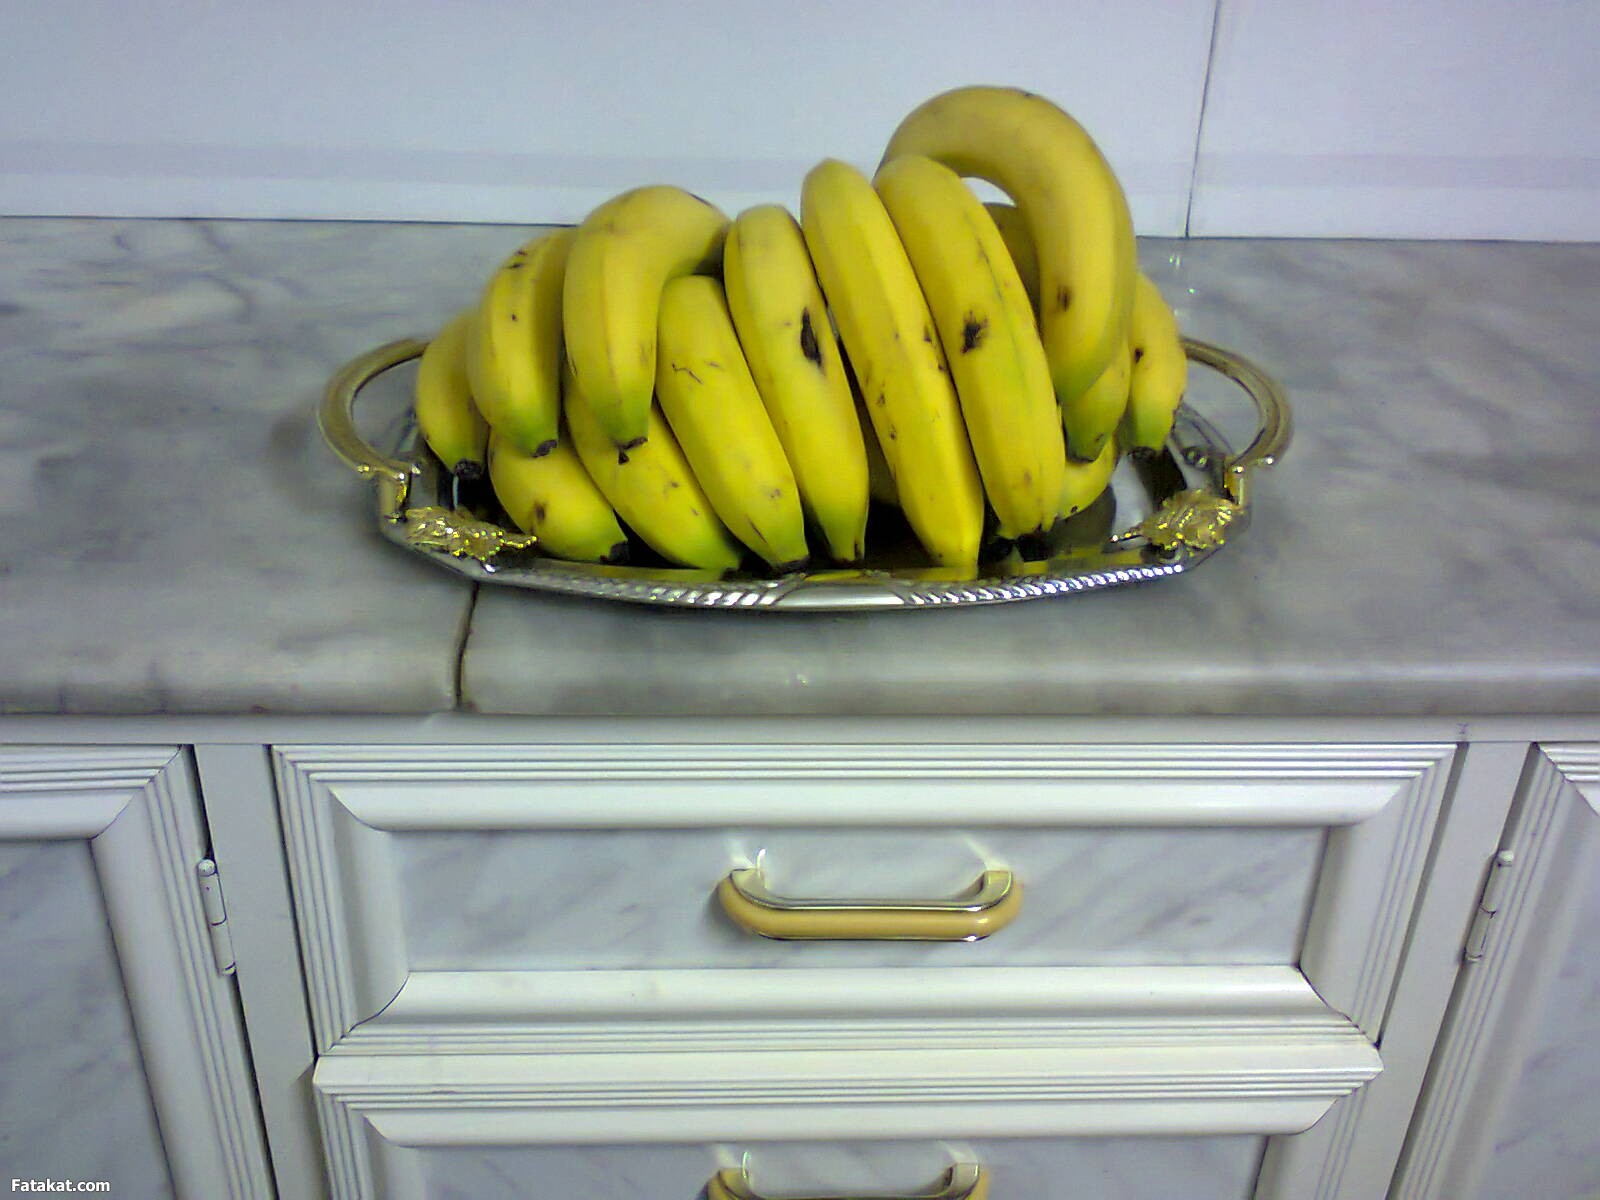 بالصور كيفية حفظ الموز فالثلاجة